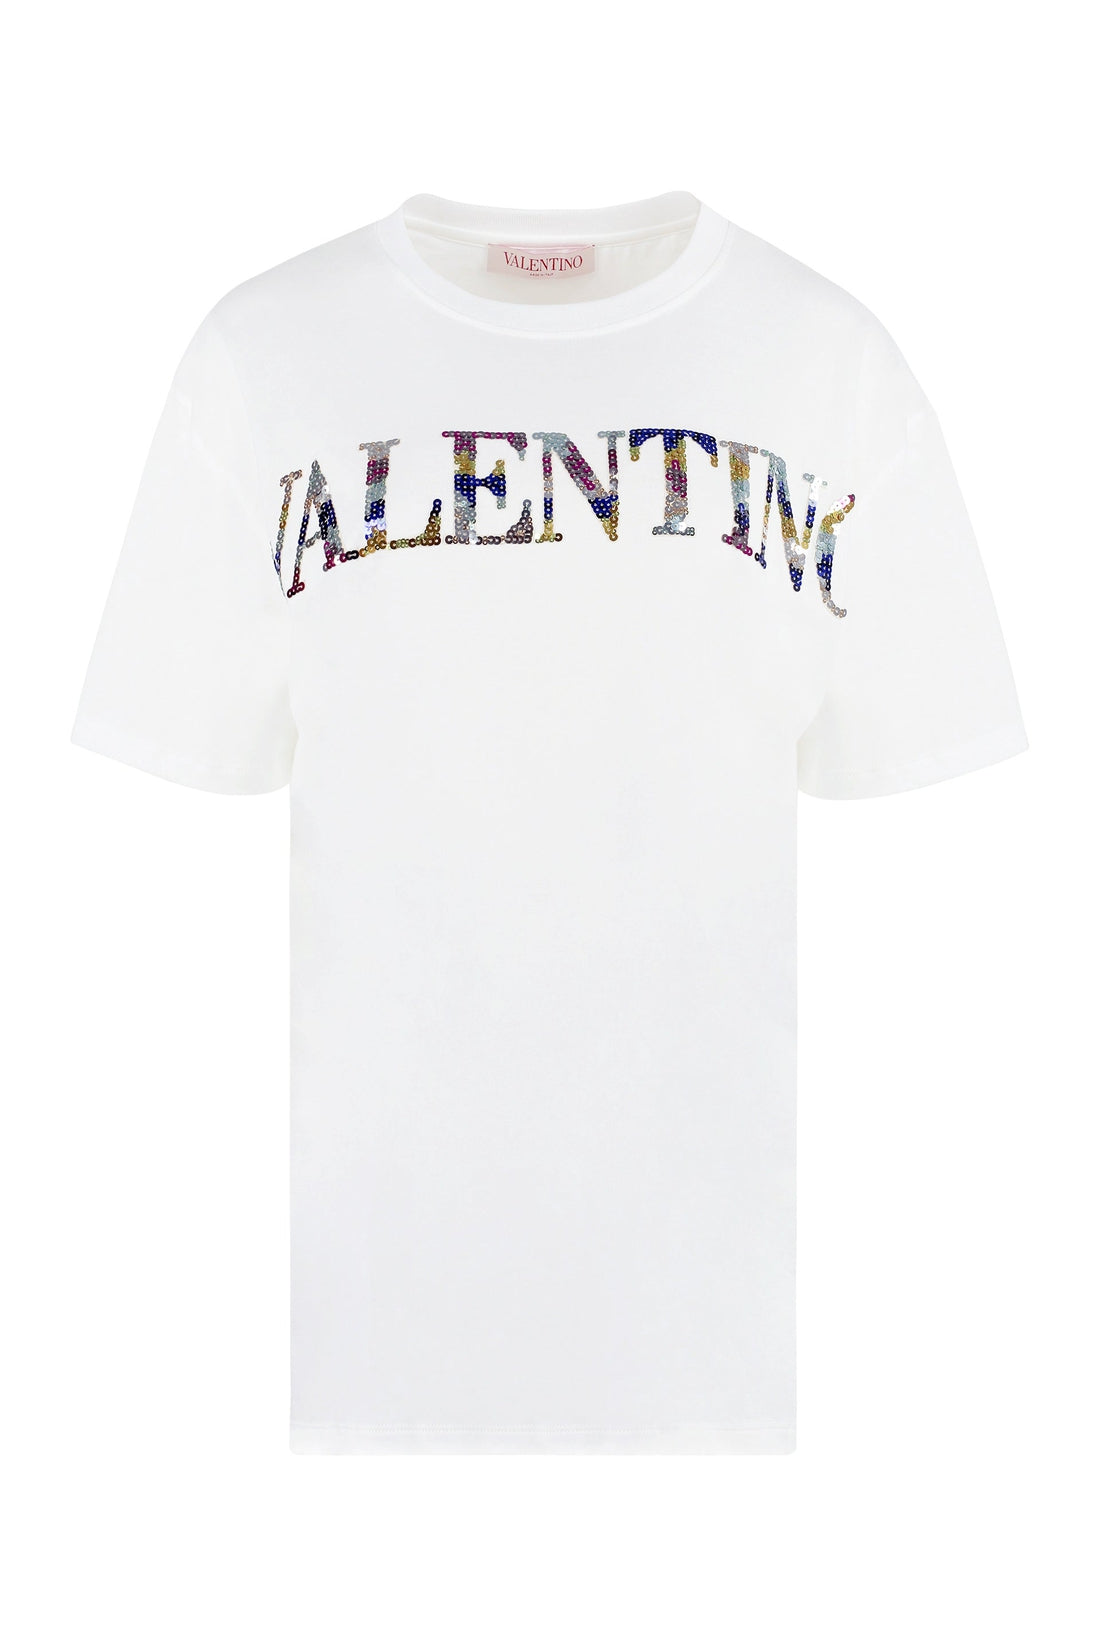 Valentino-OUTLET-SALE-Logo cotton t-shirt-ARCHIVIST